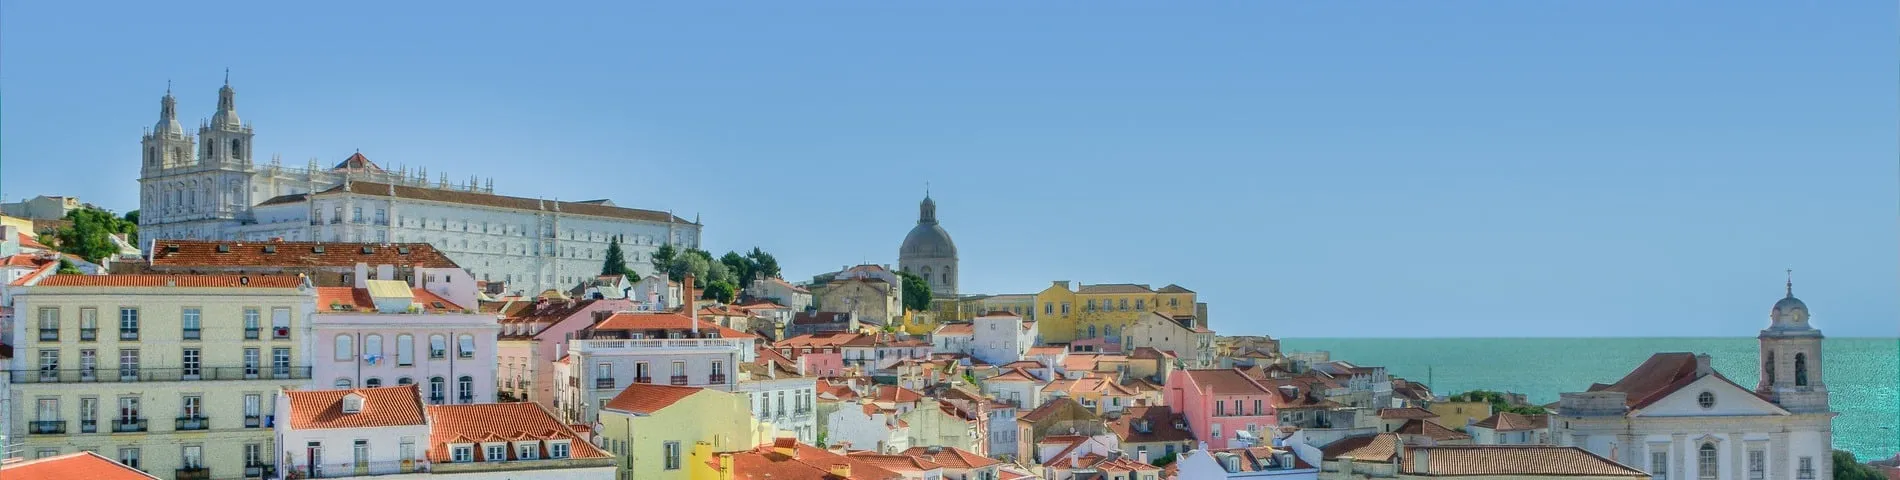 Lizbon - 